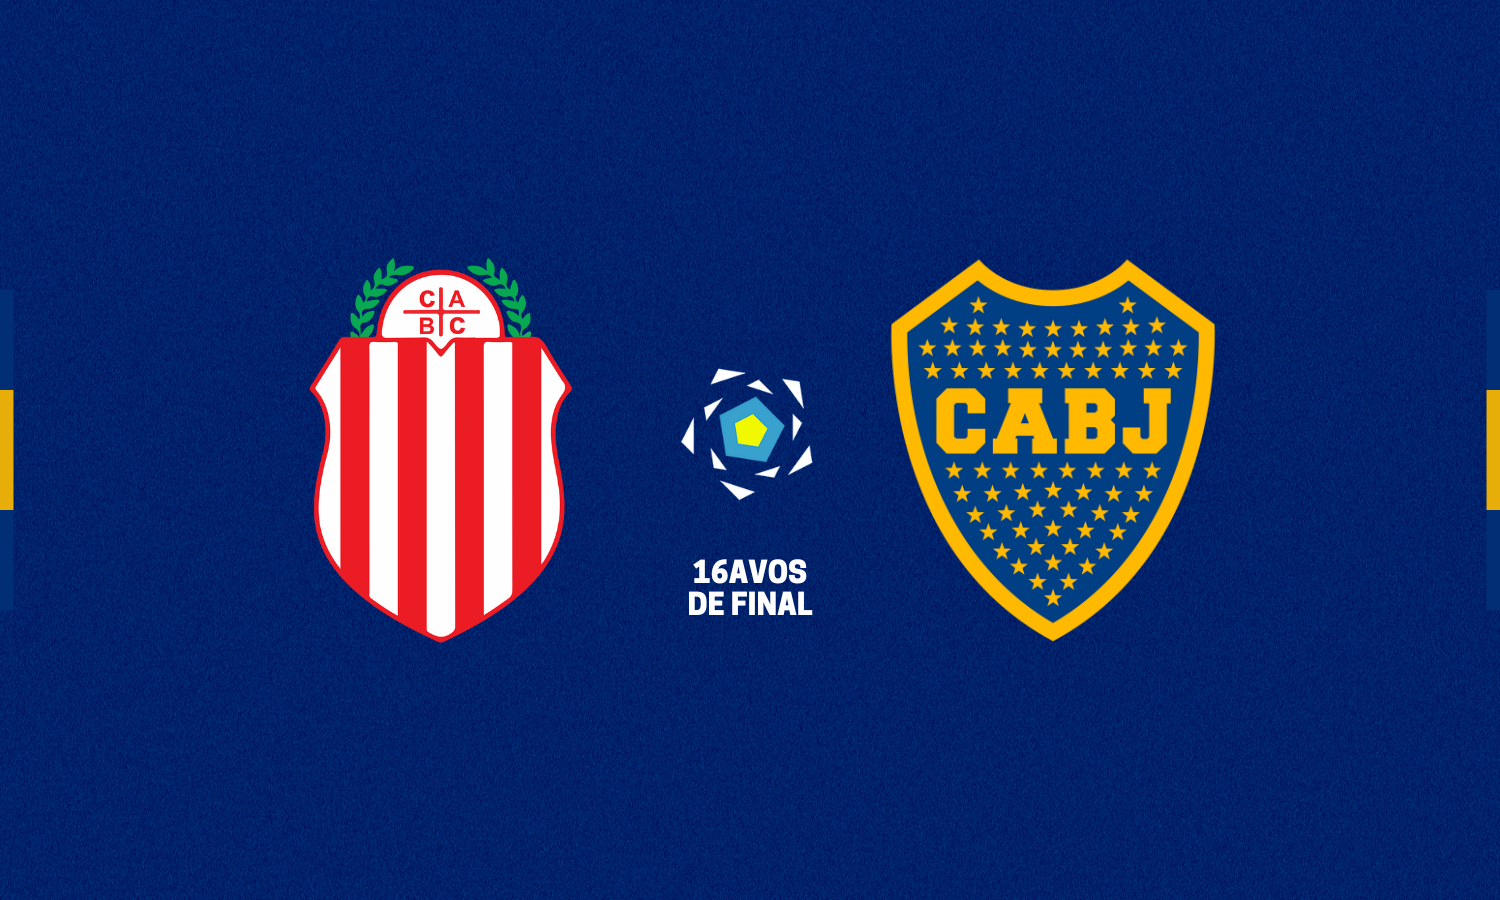 Barracas Central vs Boca - Copa Argentina - 16avos de final